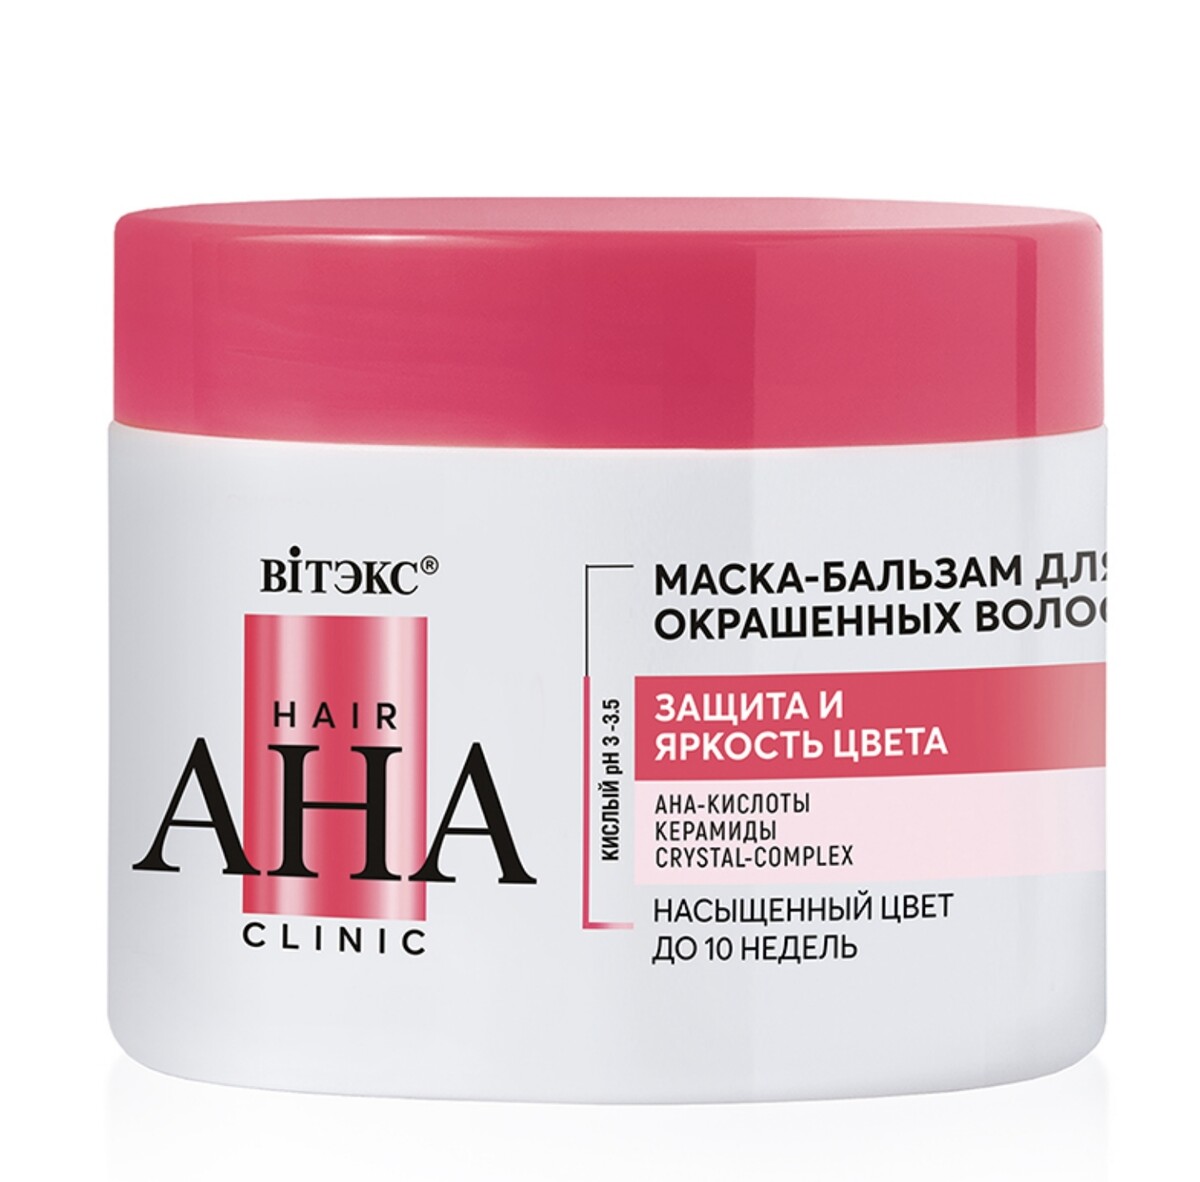 Hair aha clinic маска-бальзам для окрашенных волос защита и яркость цвета 300мл маска бальзам для волос protein repair